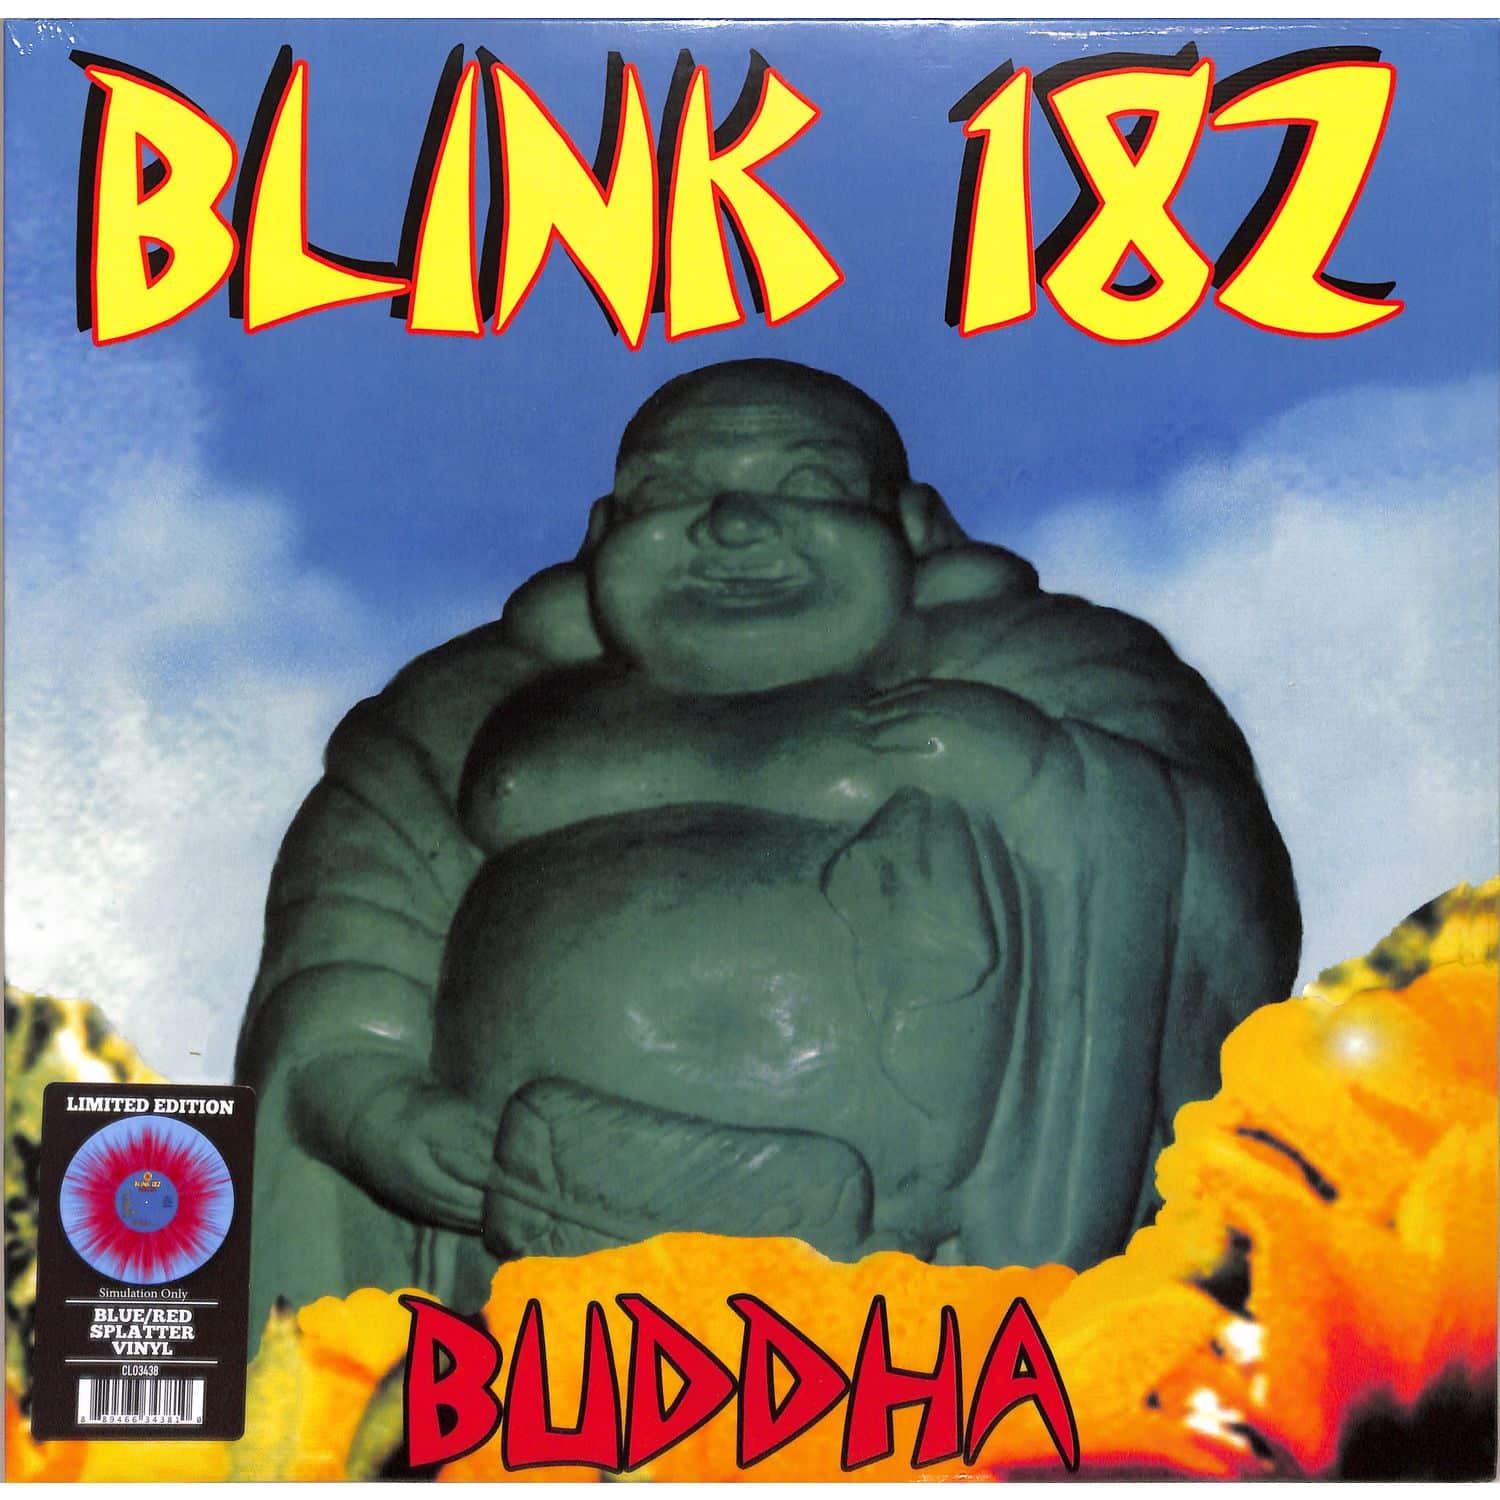 blink-182 - BUDDHA BLUE / RED SPLATTER 